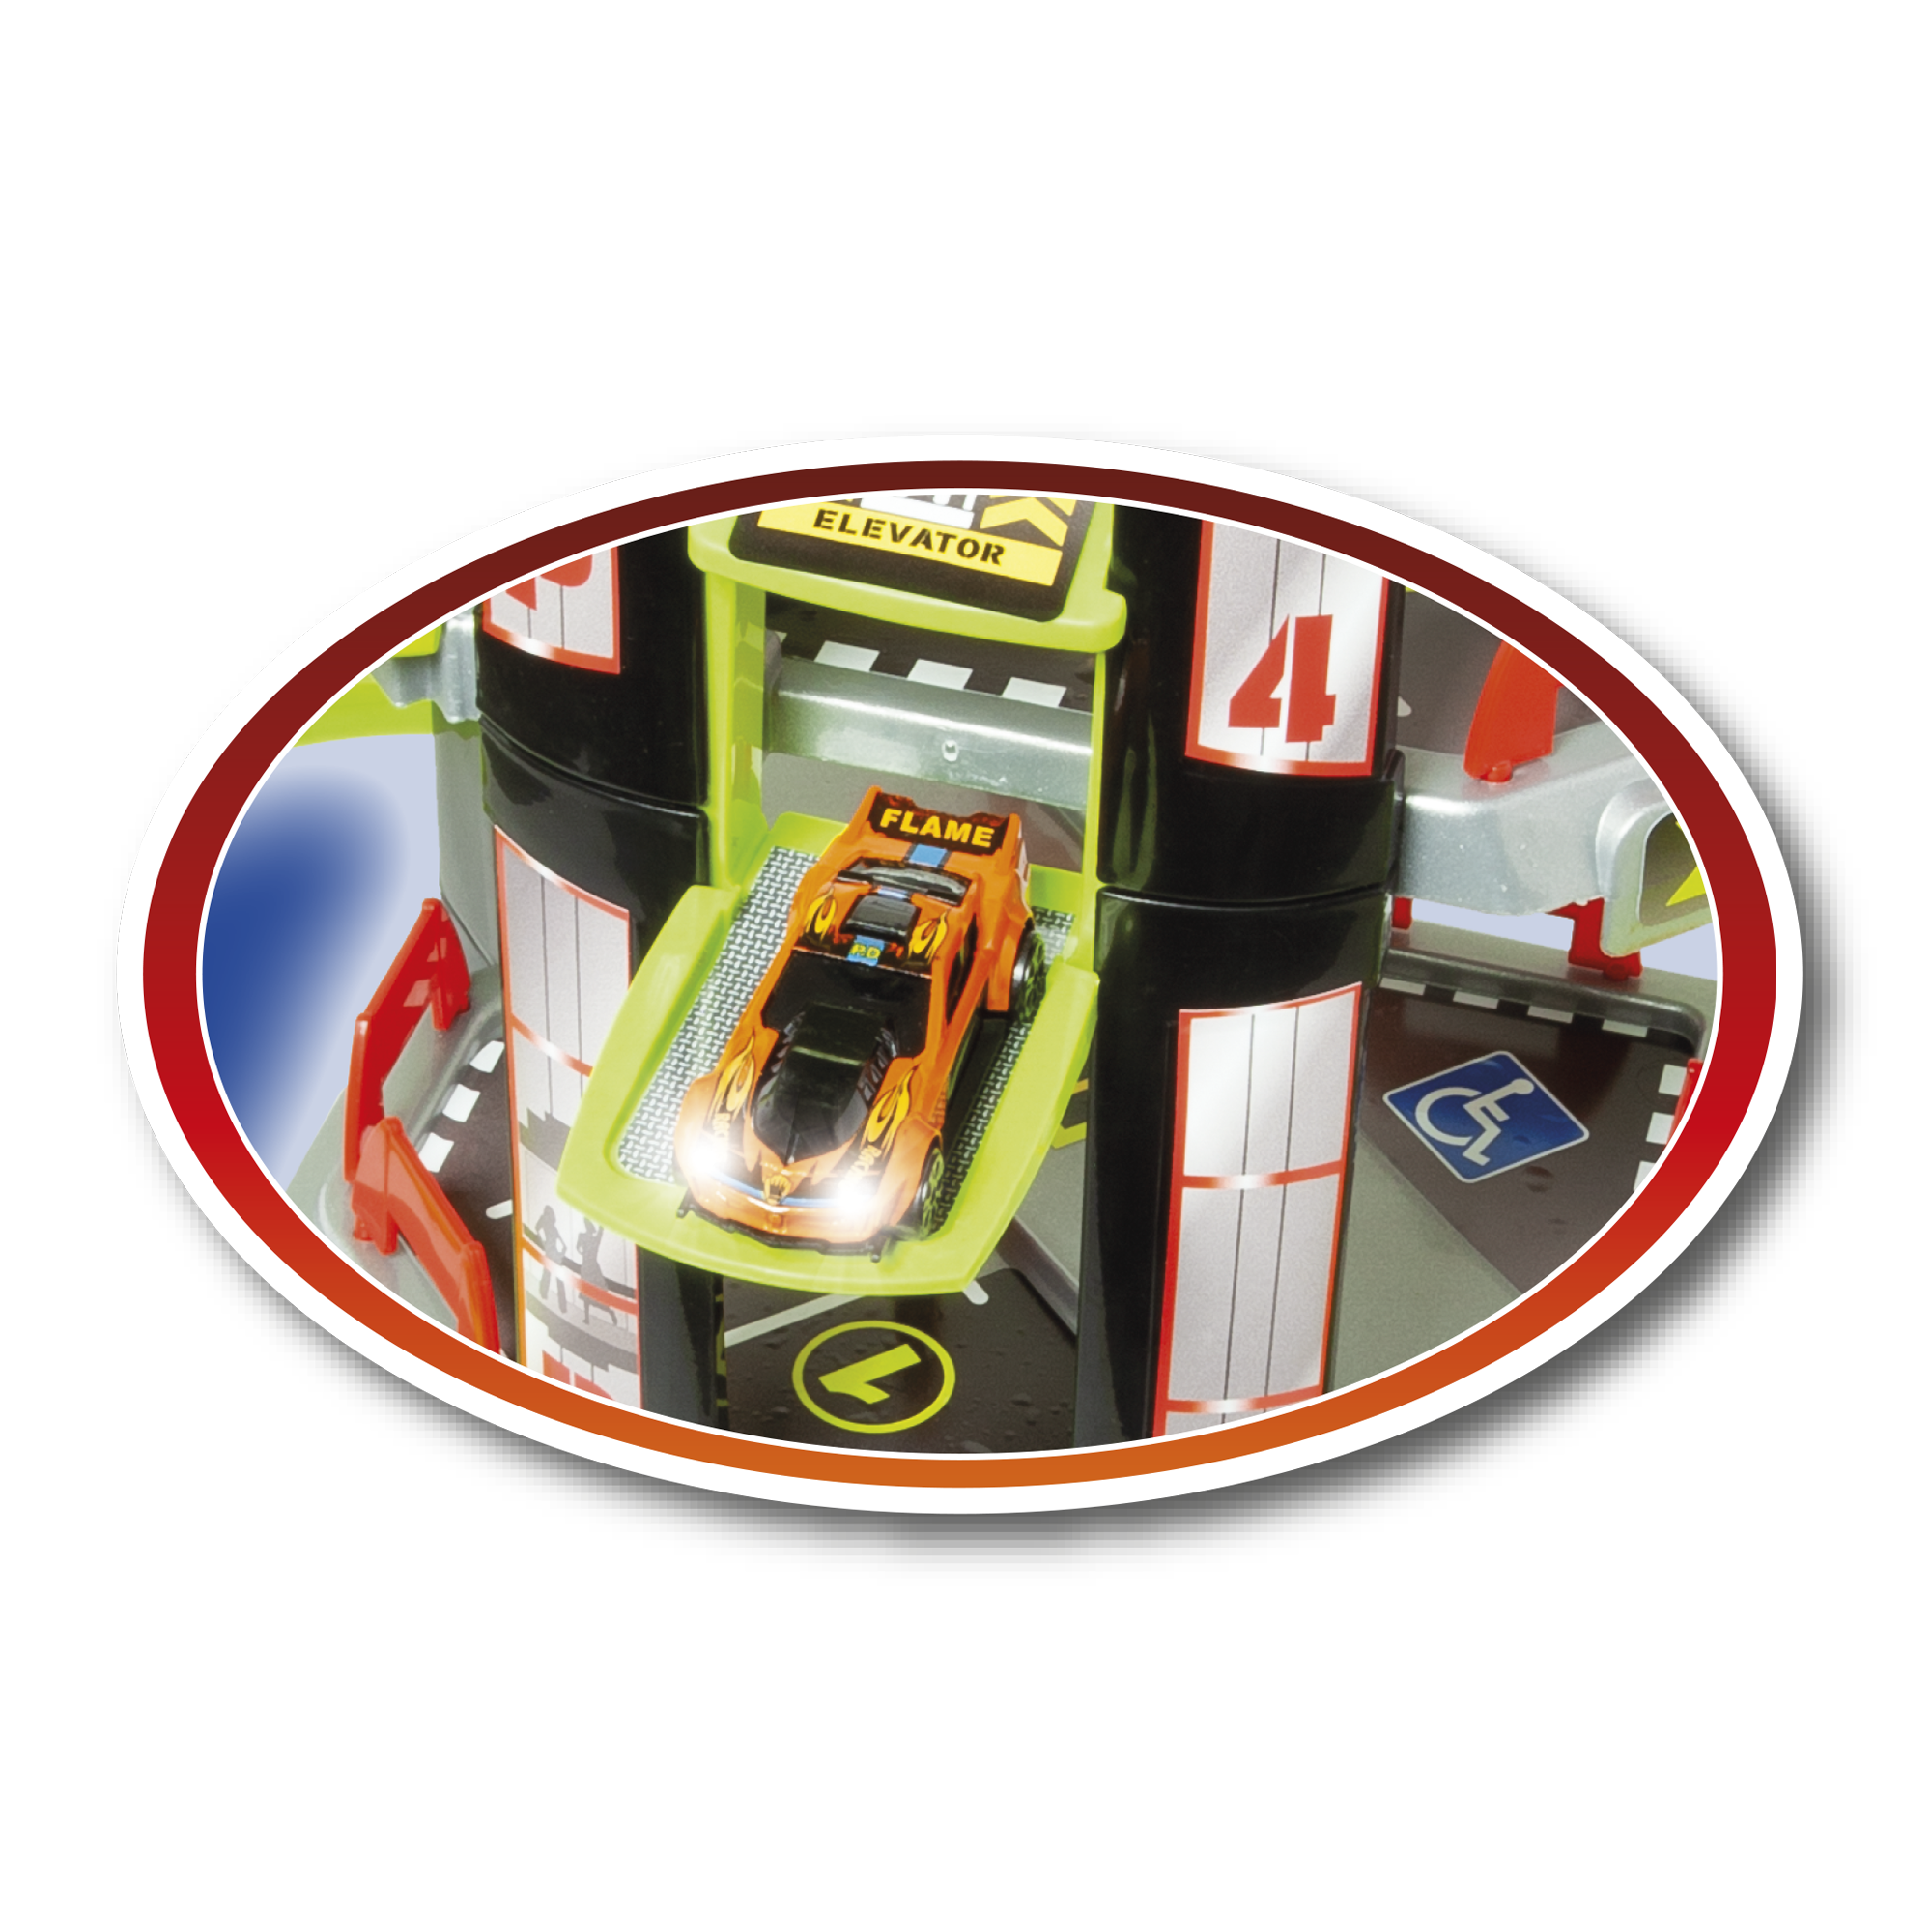 Garage 5 livelli - MOTOR & CO.